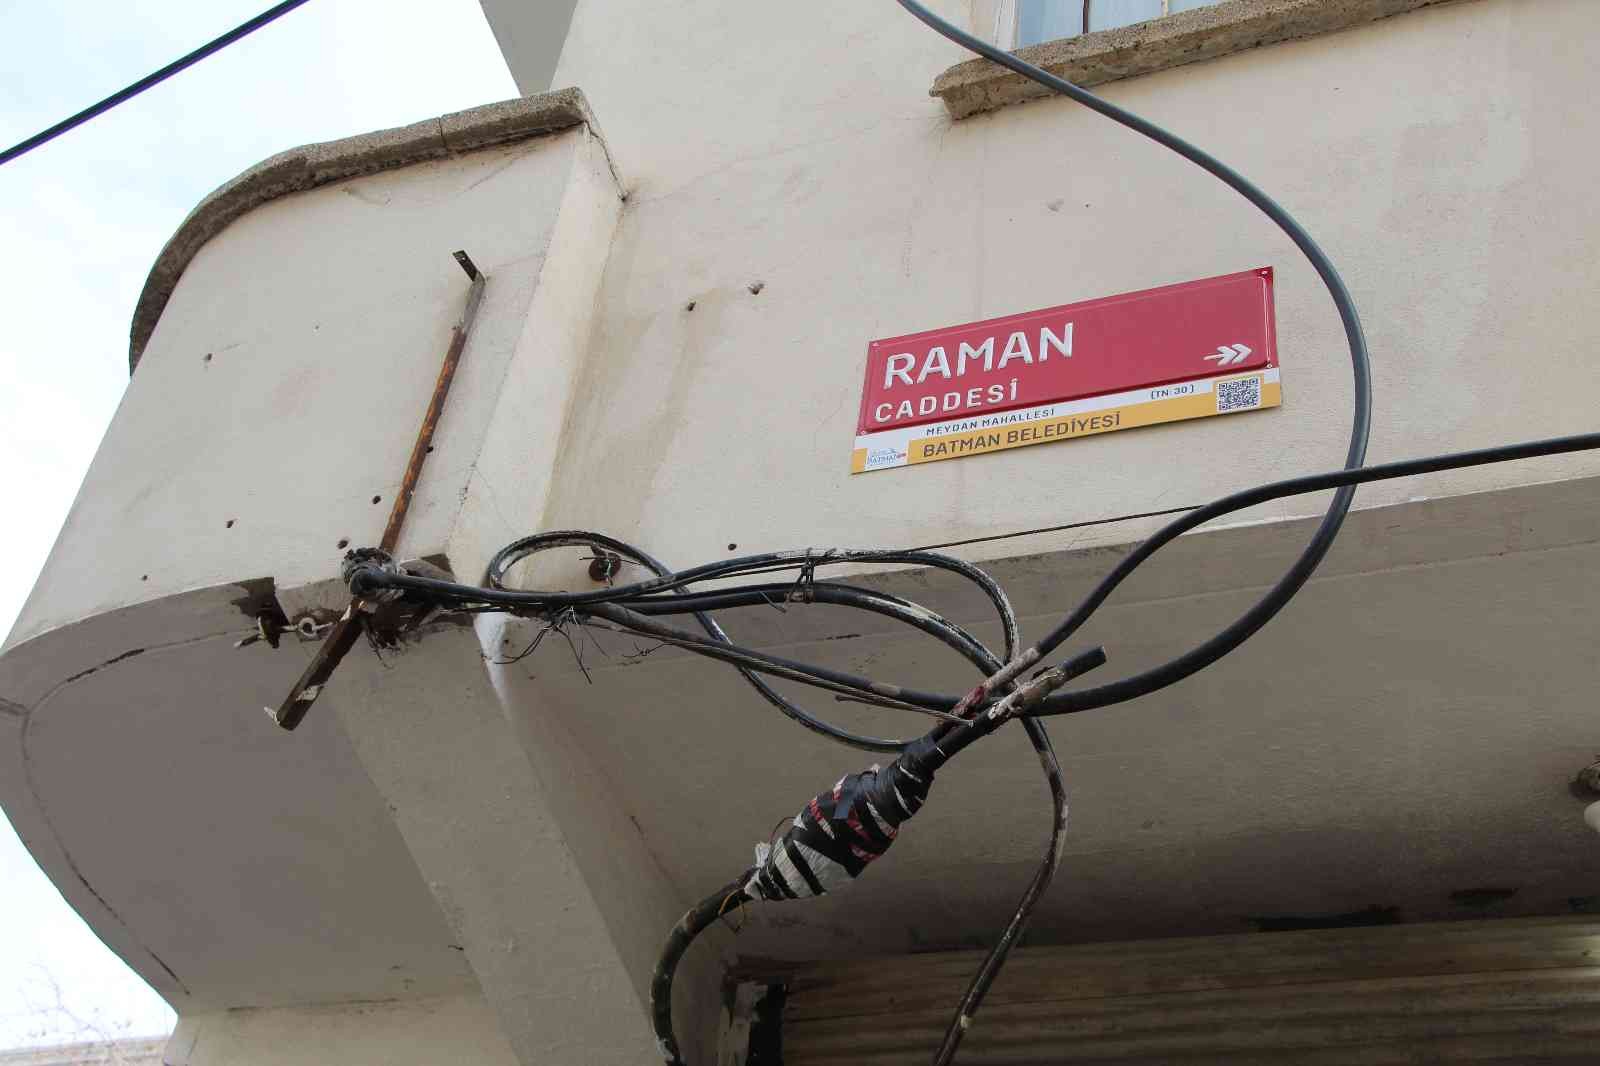 Hırsızların çaldığı internet kabloları yüzünden iki mahalle 2 aydır evlerine internet alamıyor #batman